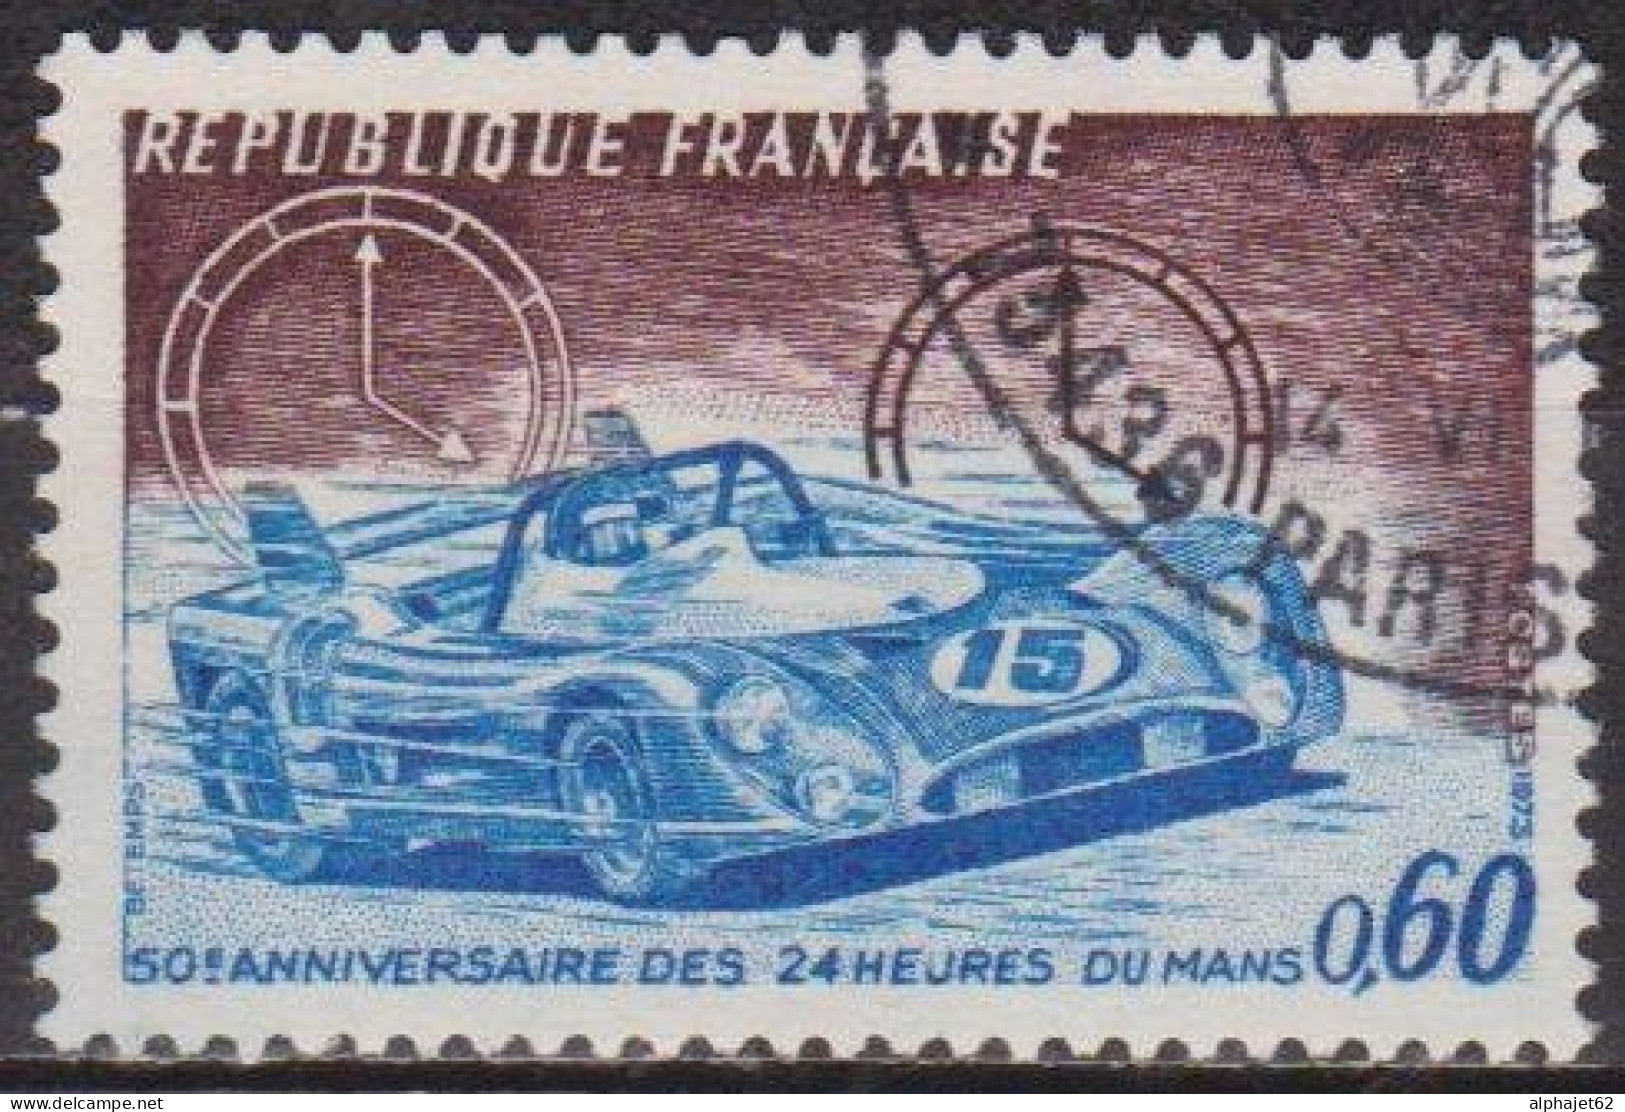 Sport Automobile - FRANCE - 24 H Du Mans Auto - N° 1761 - 1973 - Usati